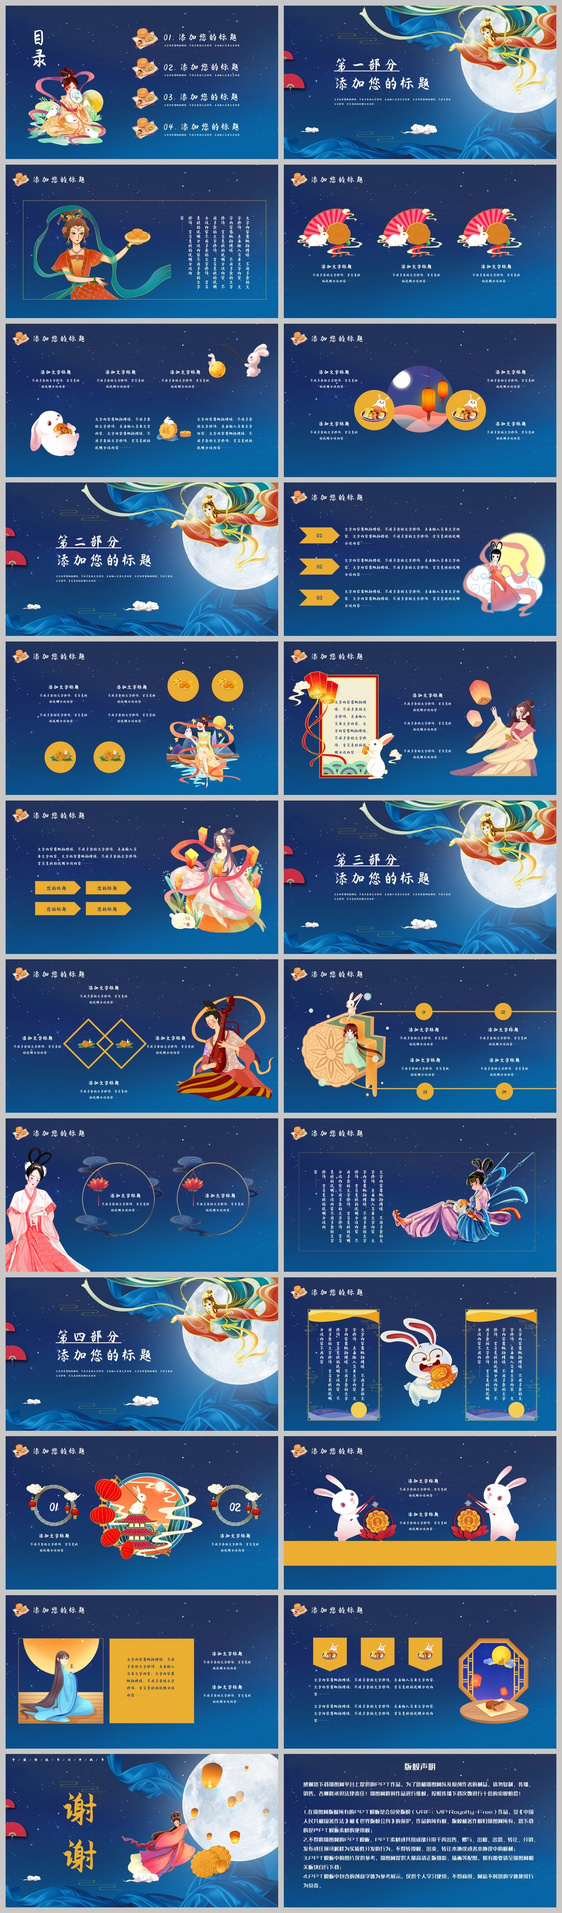 卡通风中国传统节日嫦娥奔月中秋节节日介绍PPT模板